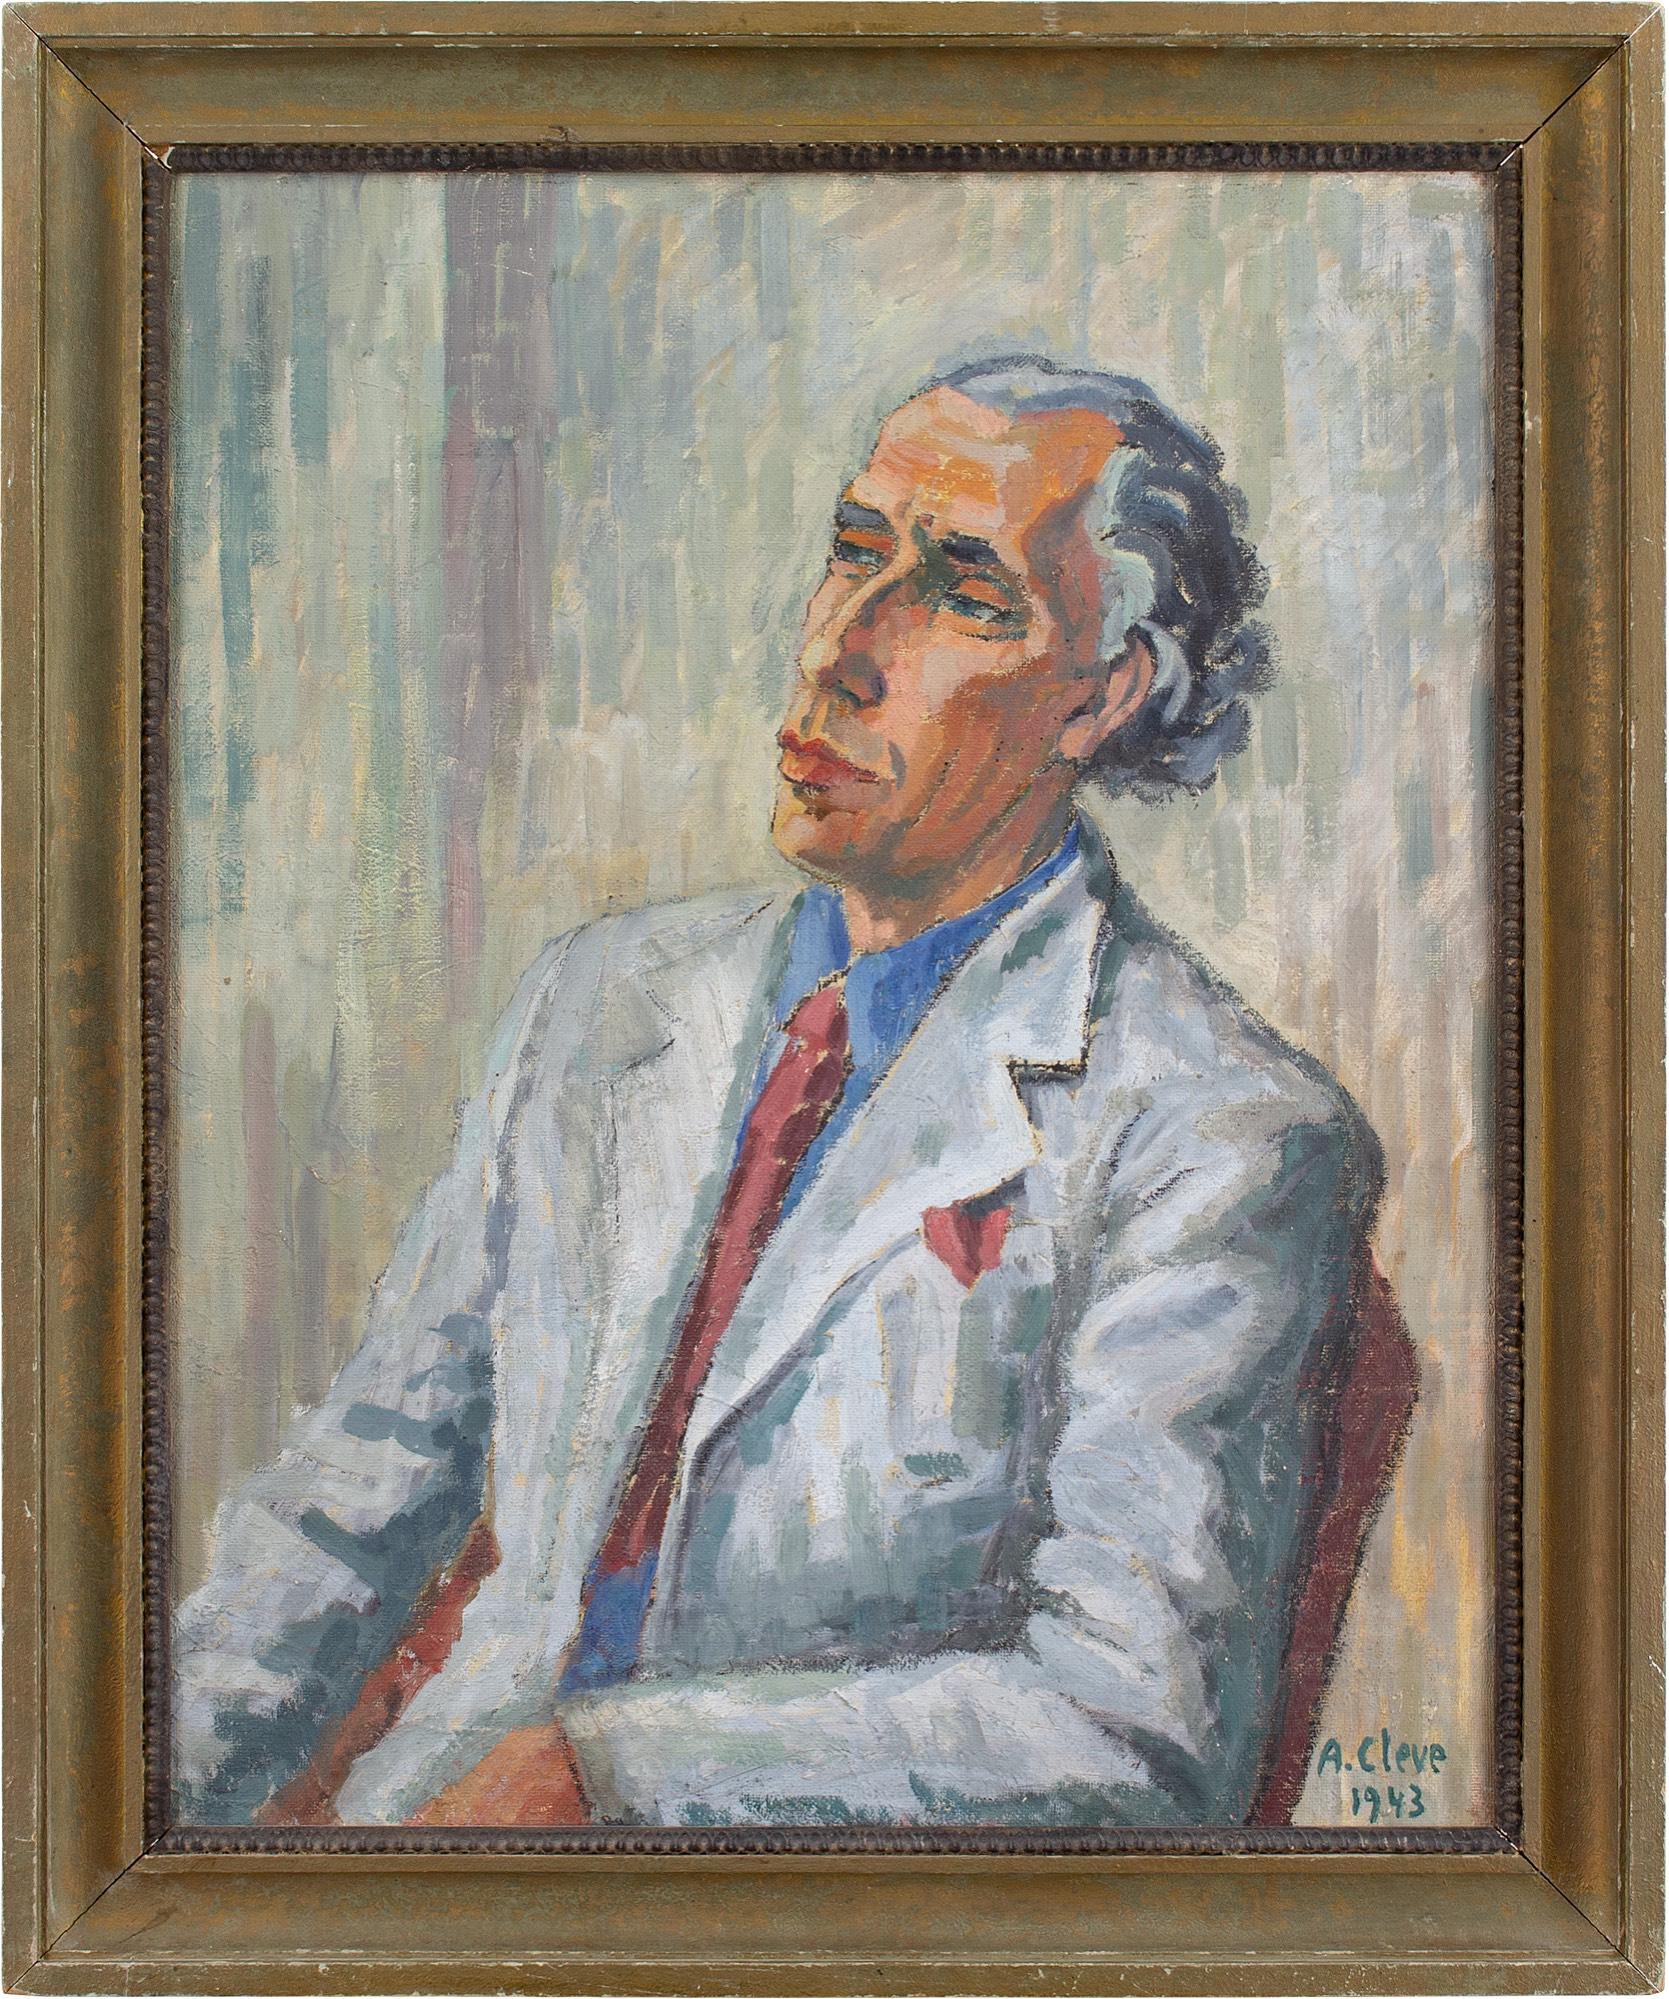 Ce portrait majestueux de l'artiste suédoise Agnes Cleve (1876-1951) représente Jan Bolinder portant une chemise bleue, une veste grise et une cravate rouge. Il est ciselé et respire la confiance.

Cleve était un artiste fascinant et l'un des